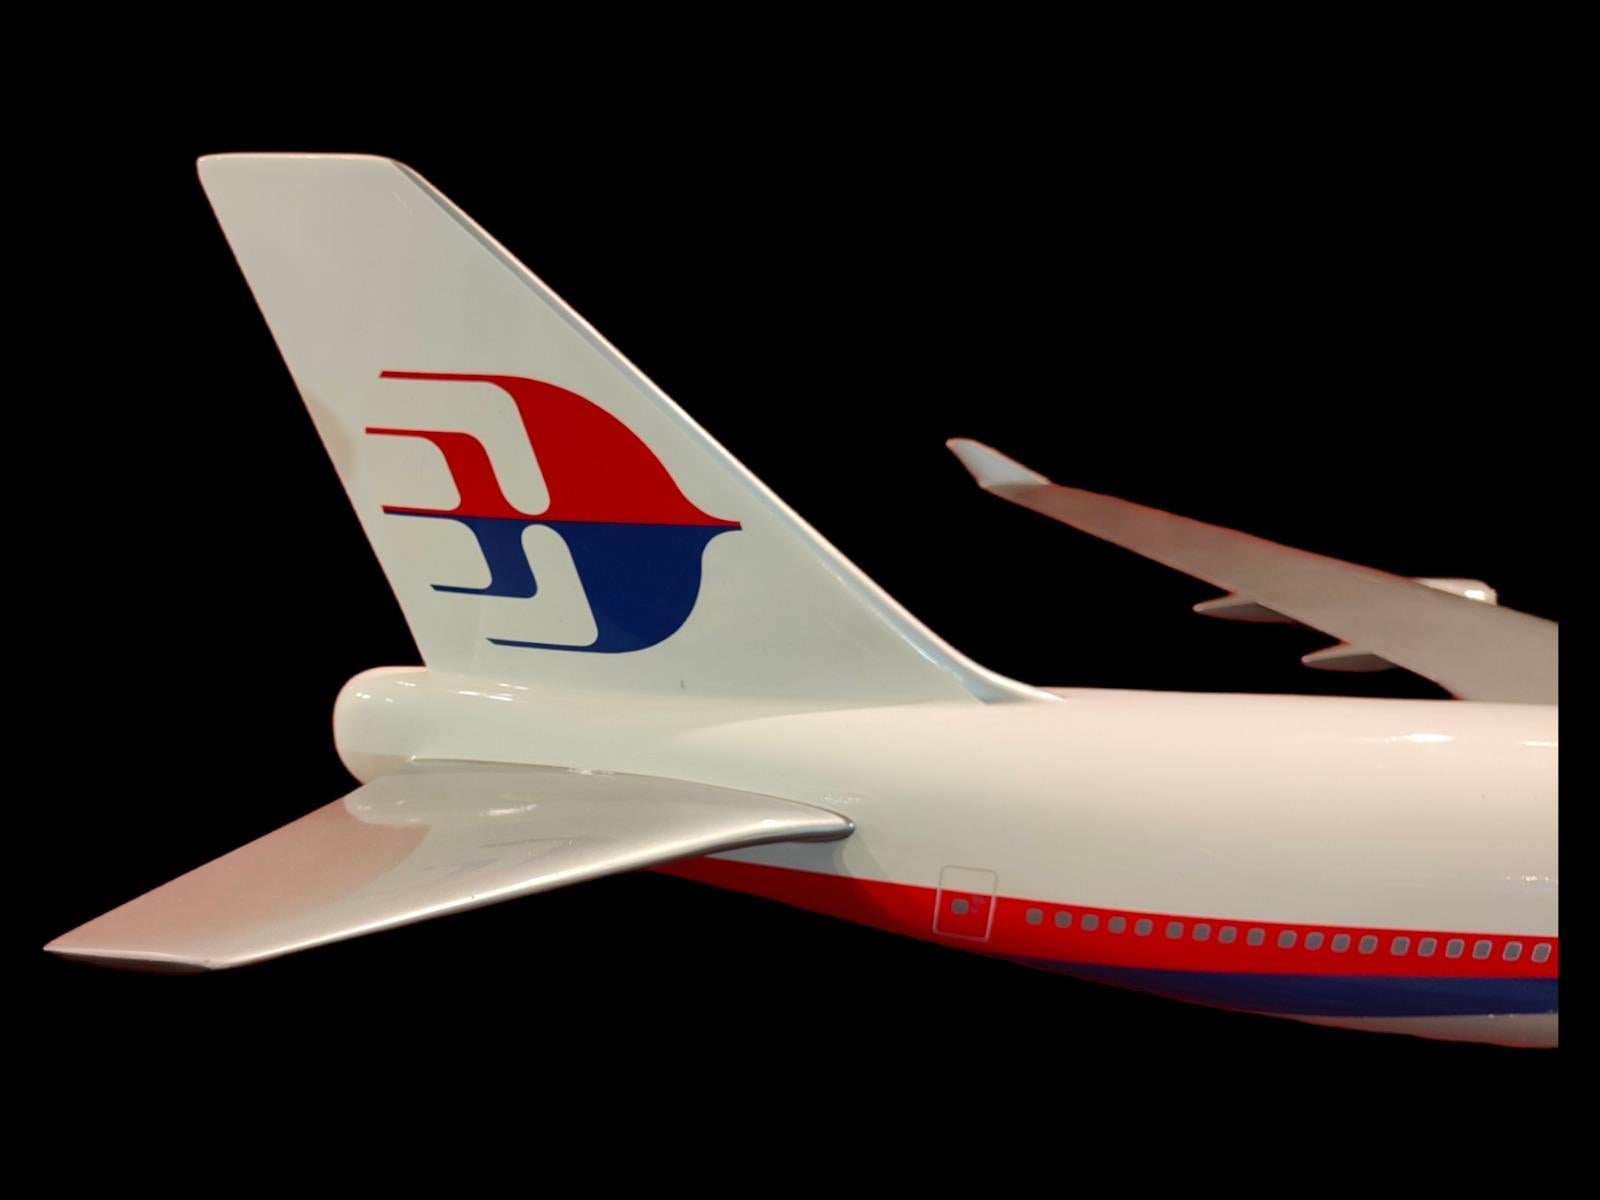 Grand avion d'agence de voyage des années 70. Très bel avion de ligne : La Malaisie. Les ailes et la base en métal sont amovibles. Excellent état. Mesures : 140 x 130 x 120cm
Magnifique.